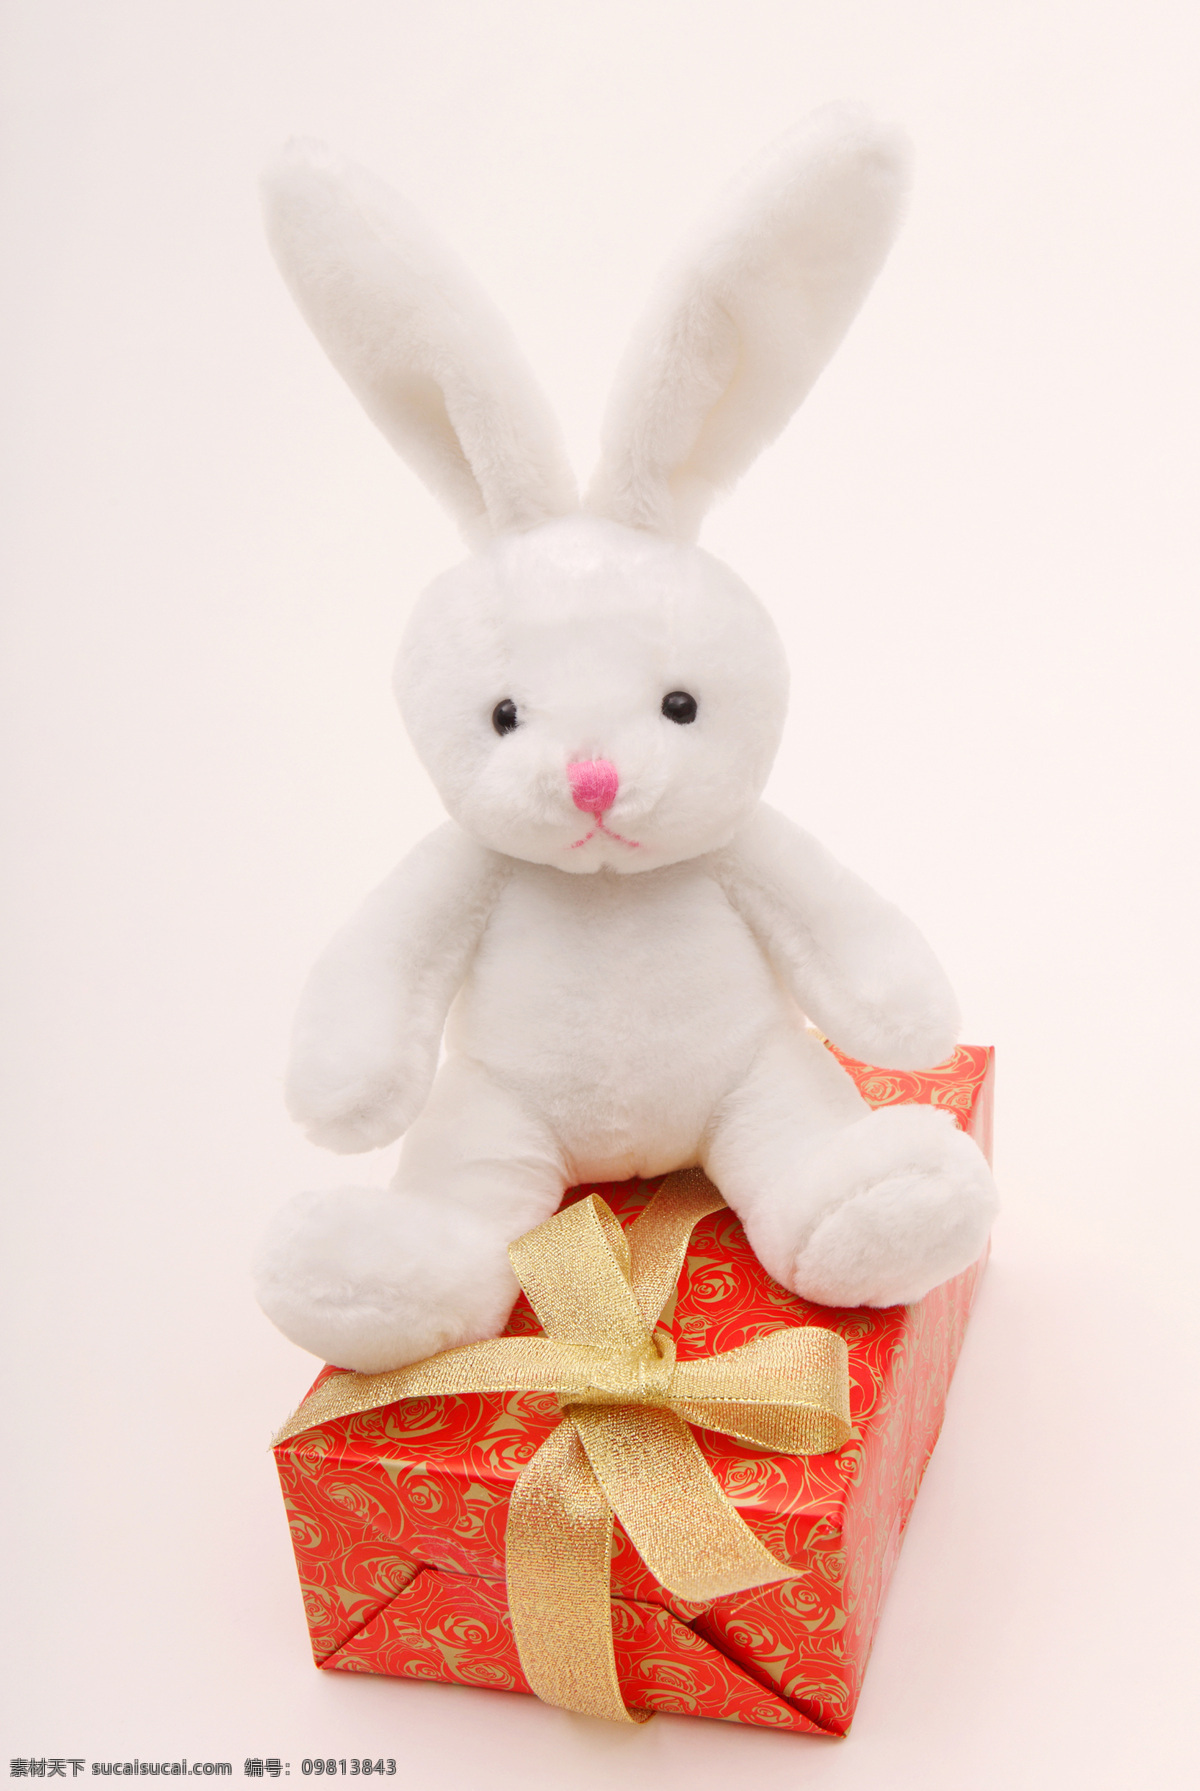 春节 缎带 盒子 蝴蝶结 节日 节日庆祝 礼物 礼物盒 毛绒玩具兔子 兔 毛绒玩具 生日礼物 圣诞礼物 圣诞节 庆祝 文化艺术 psd源文件